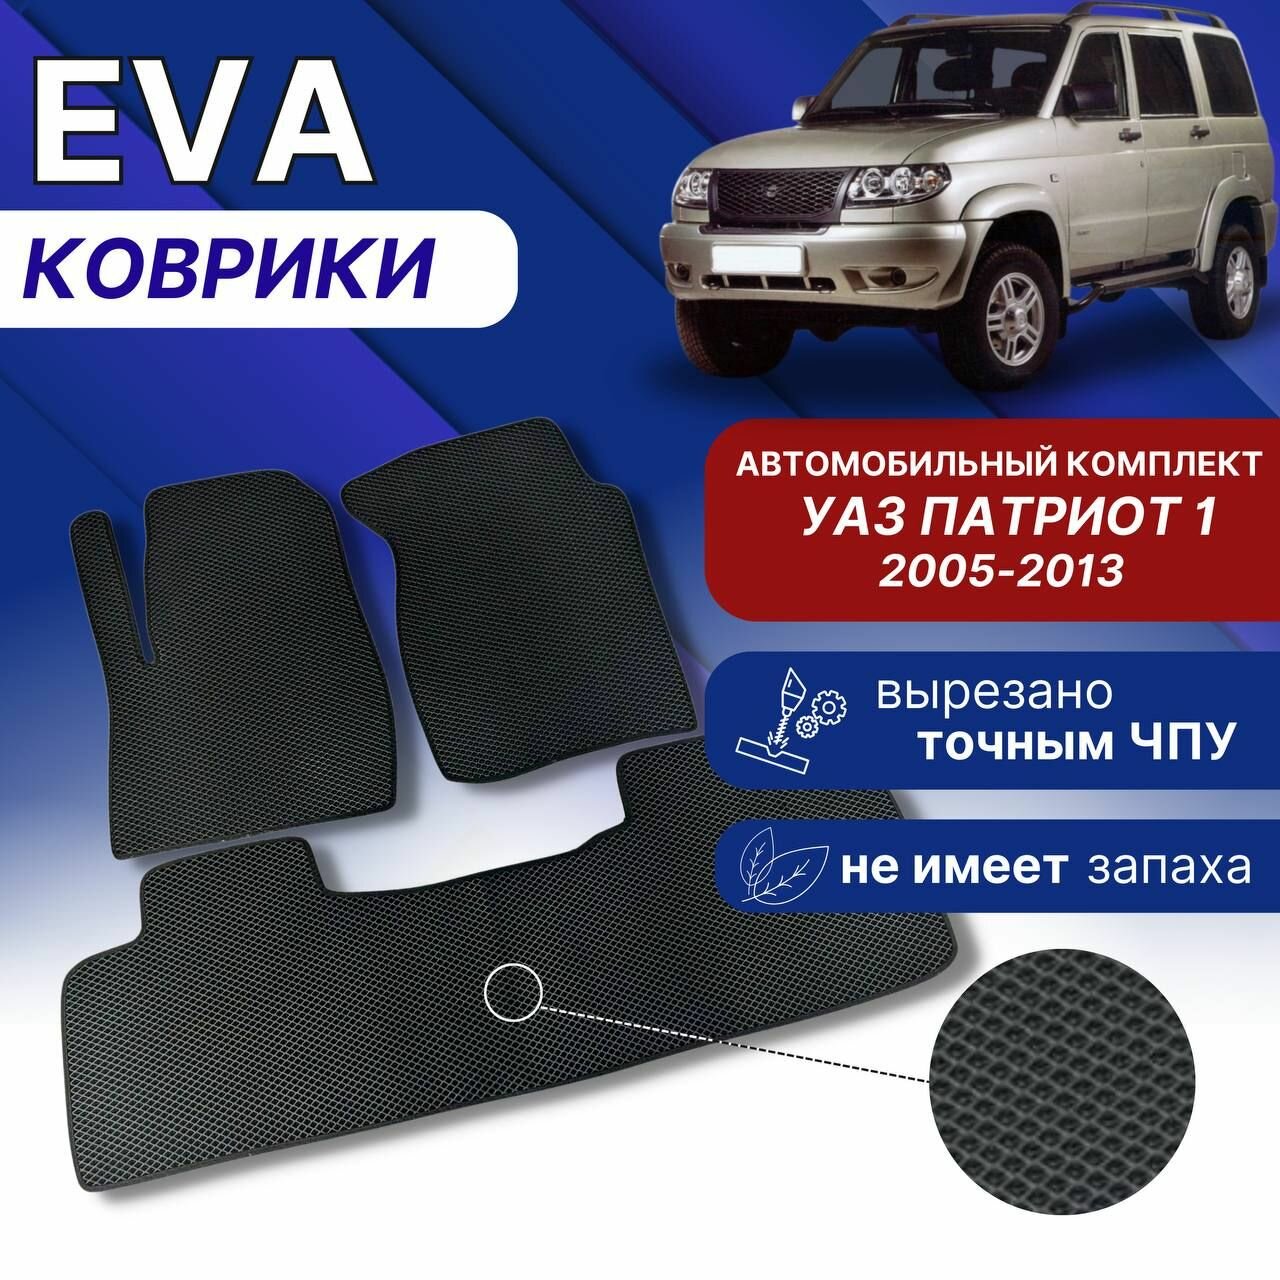 Эва коврики для УАЗ патриот 1 Черный-серый кант 2005-2013 г Eva Ева комплект авто ковров